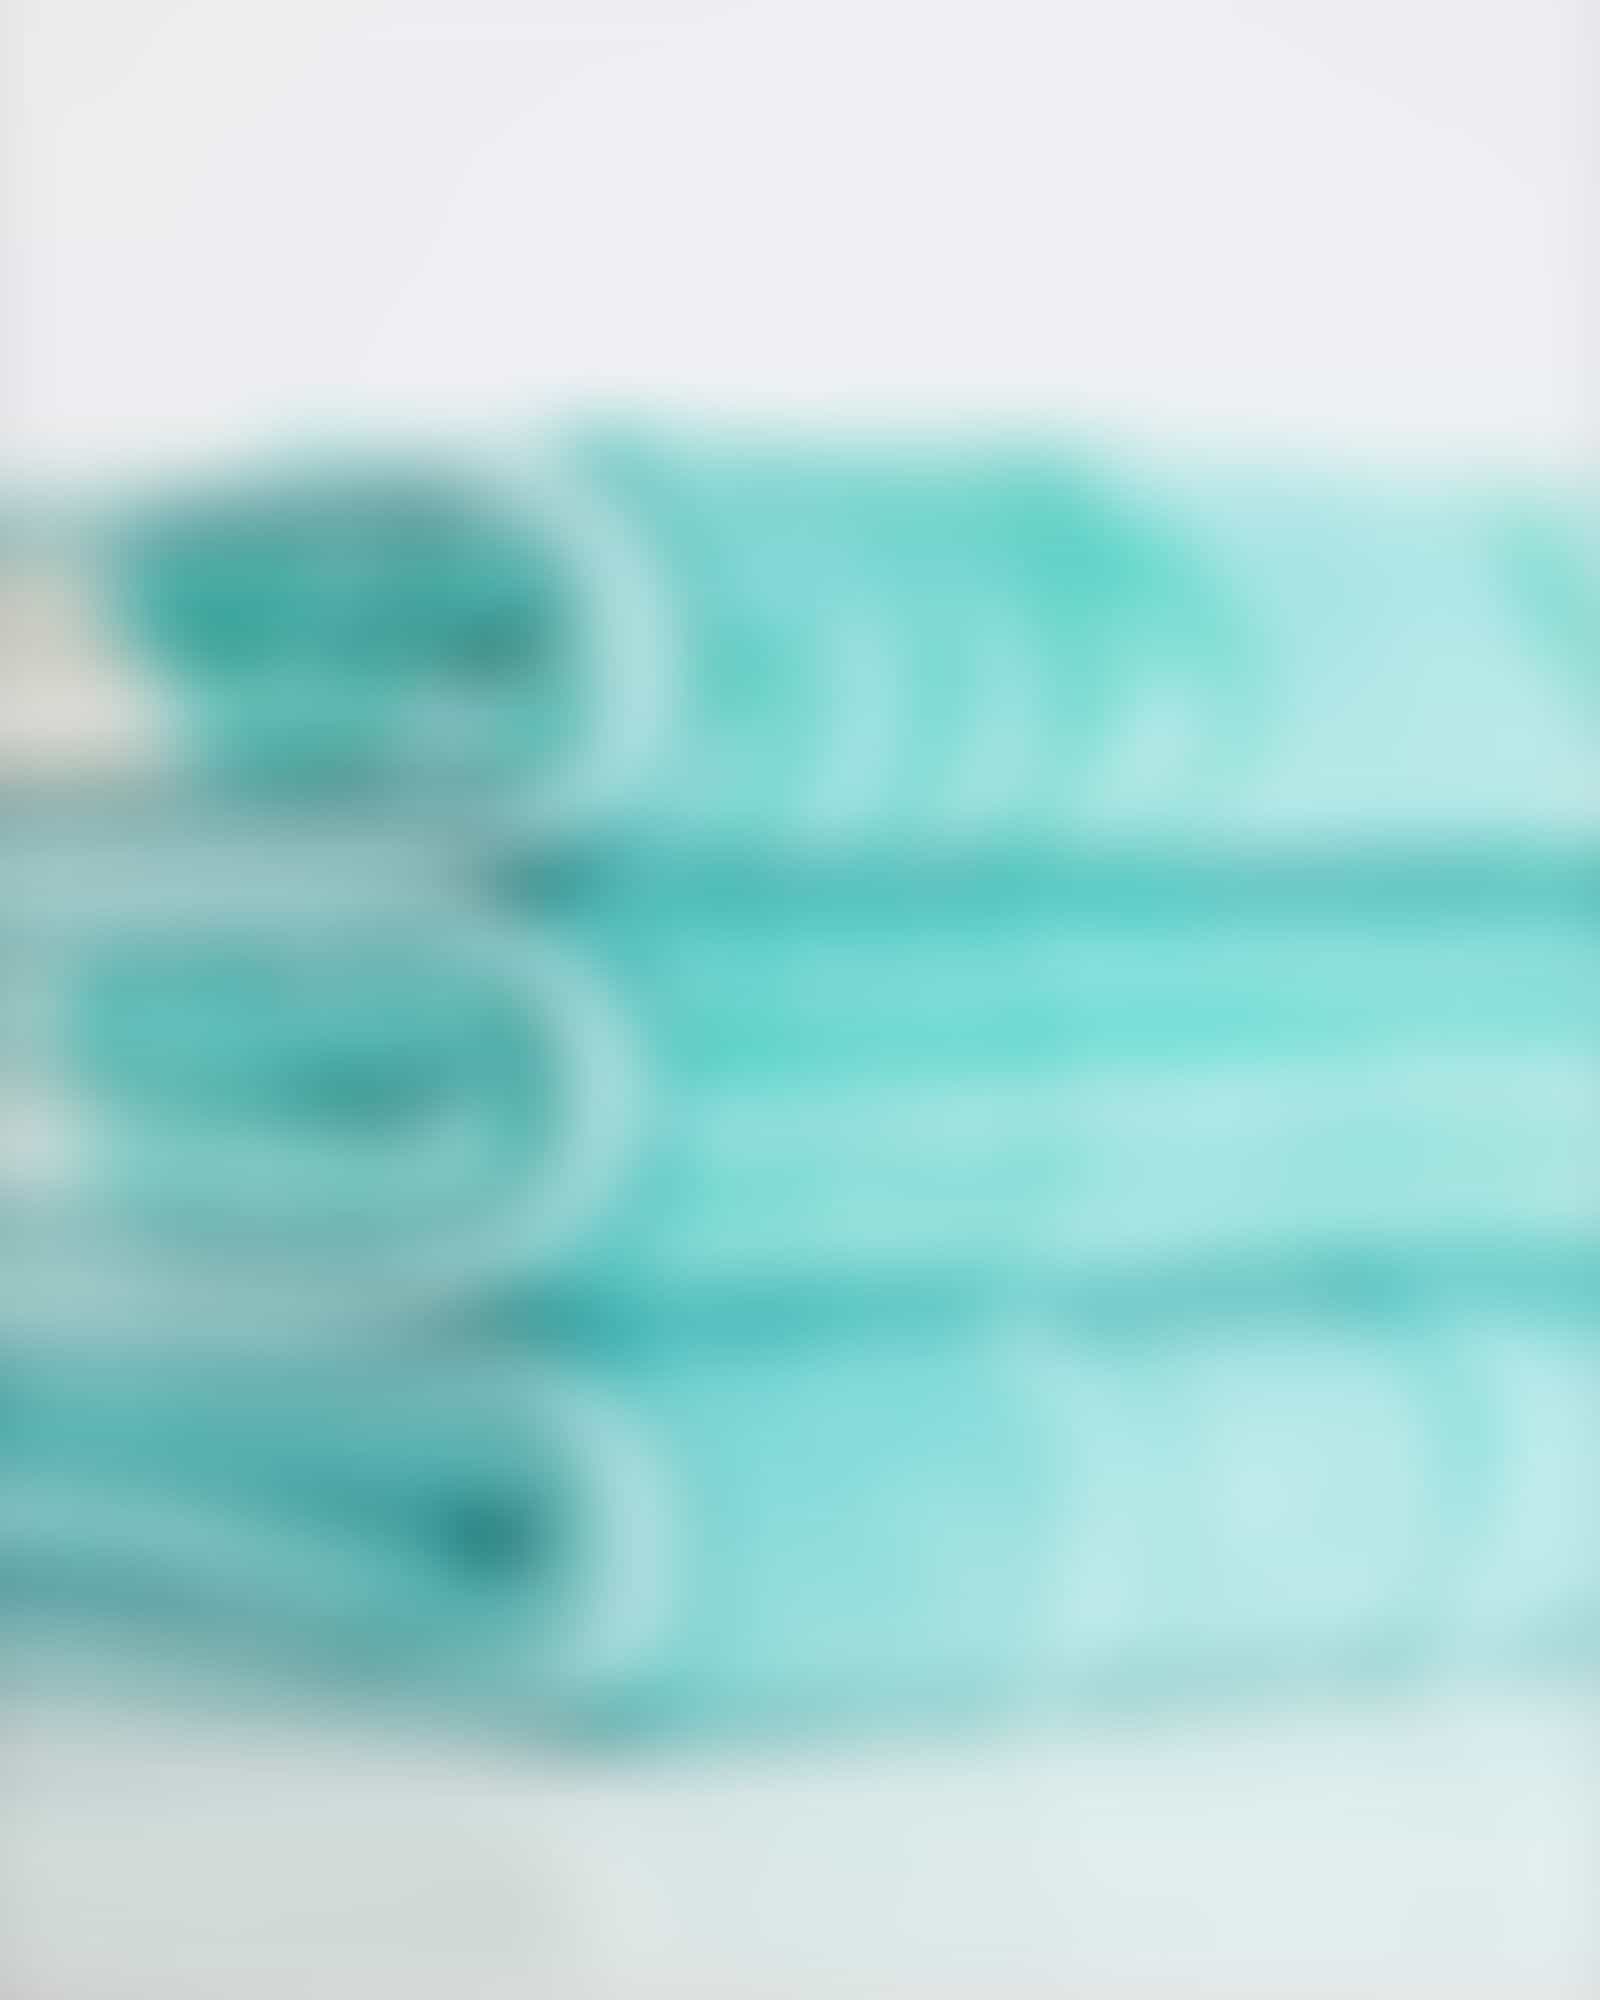 Cawö - Noblesse Cashmere Streifen 1056 - Farbe: mint - 14 - Waschhandschuh 16x22 cm